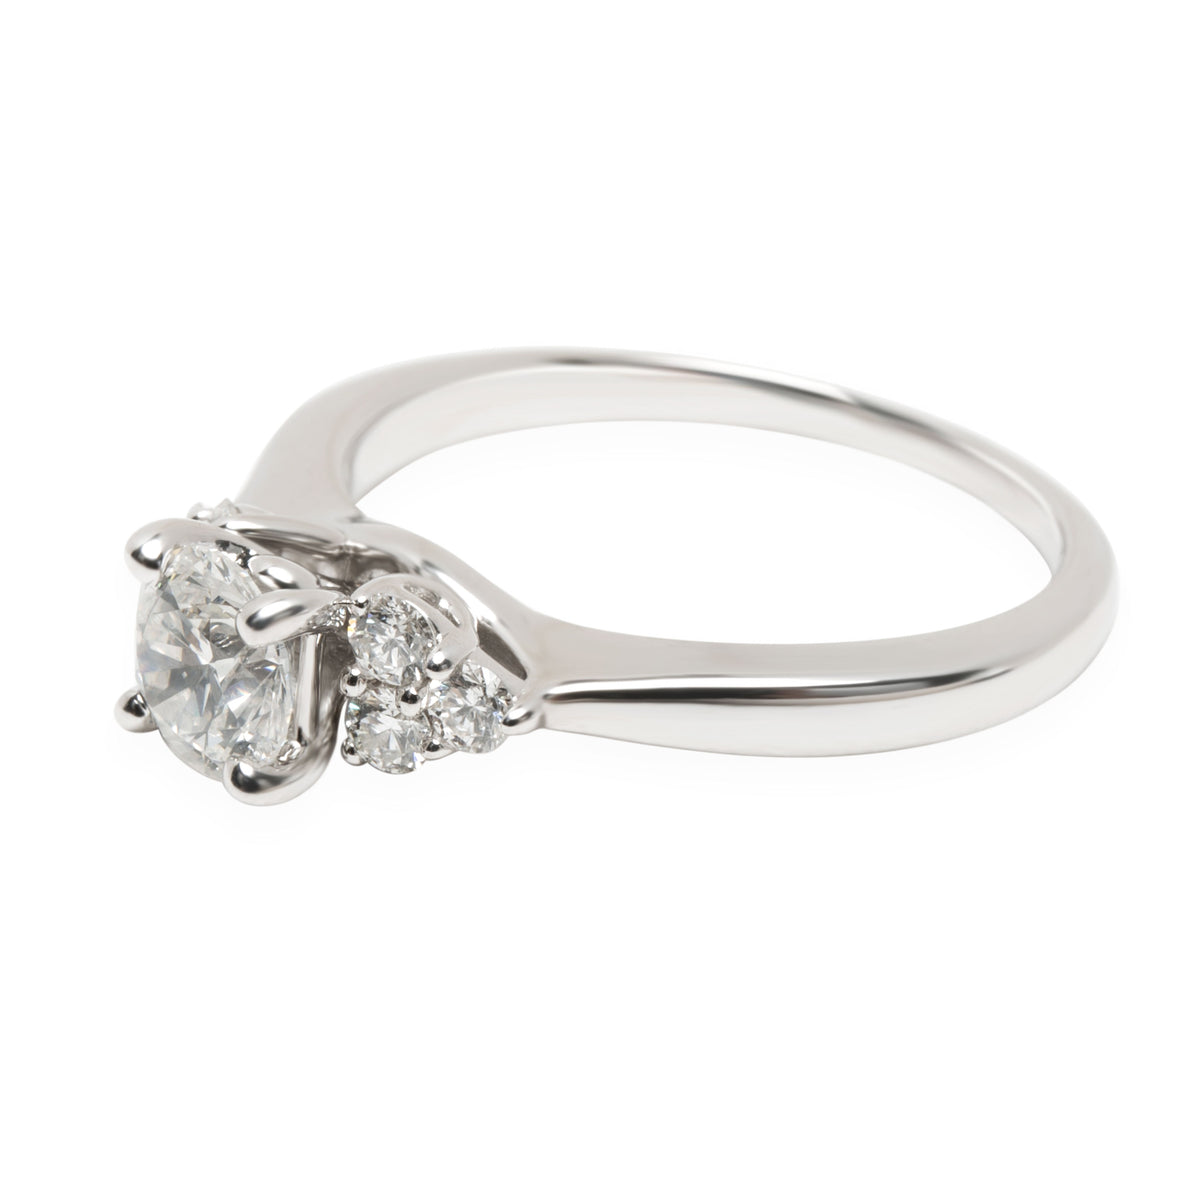 James Allen Diamond Diamond Engagement Ring in 18K White Gold E I1 0.95 CTW